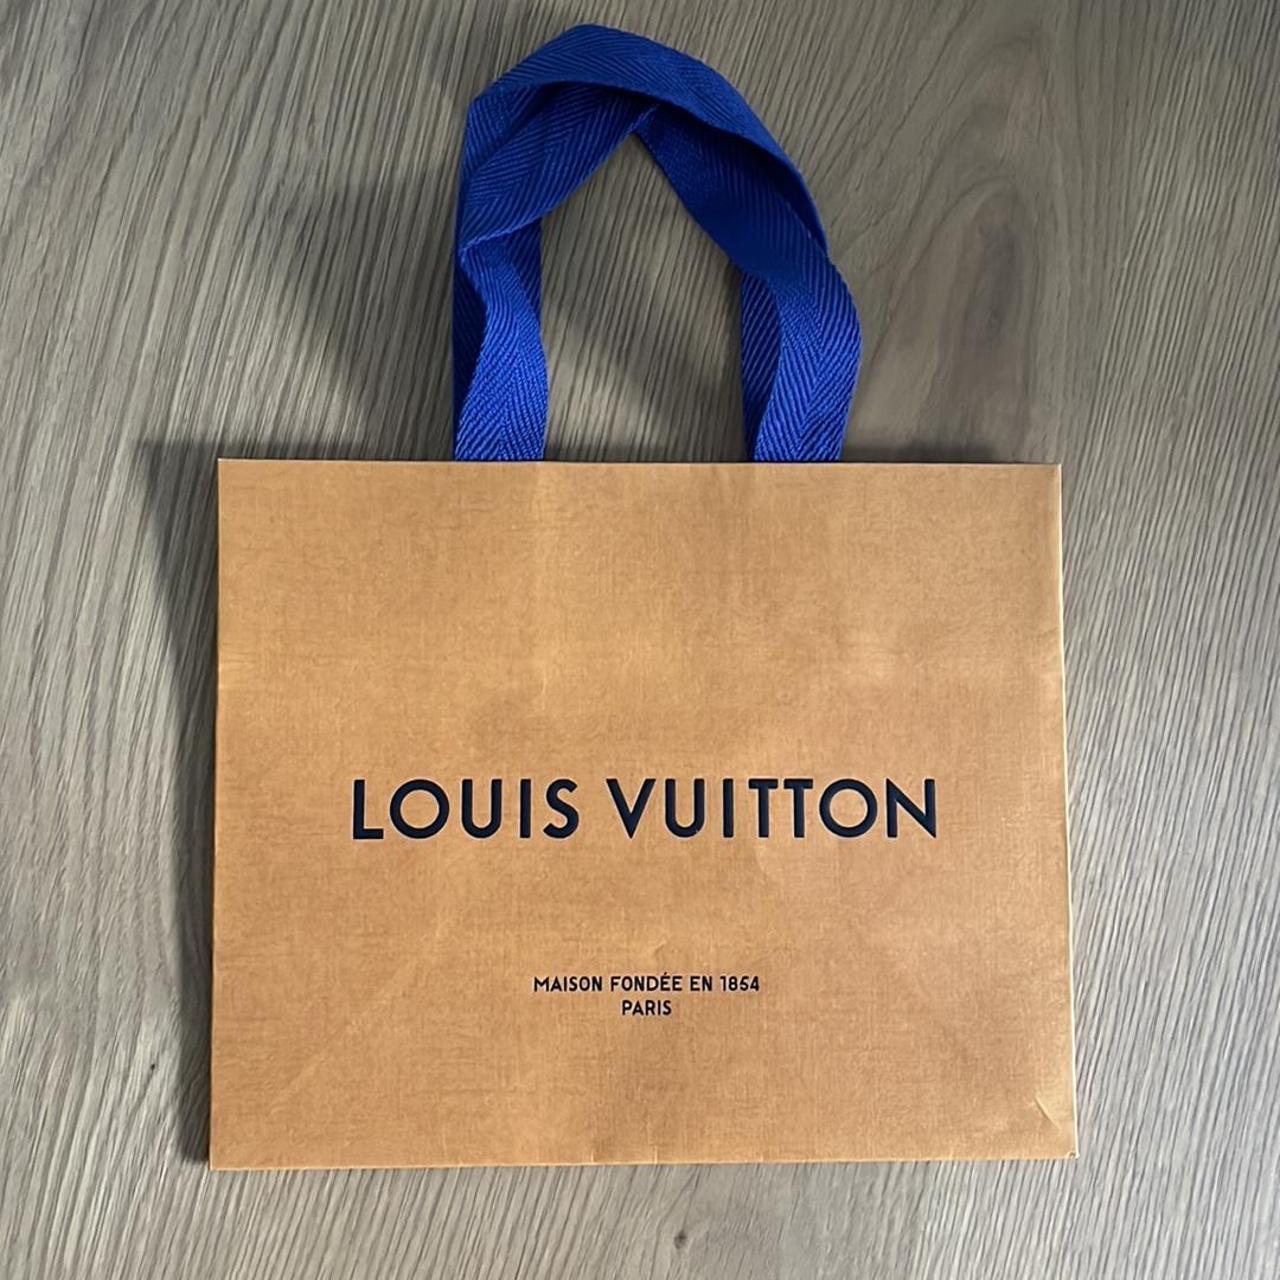 Louis Vuitton, Bath & Body